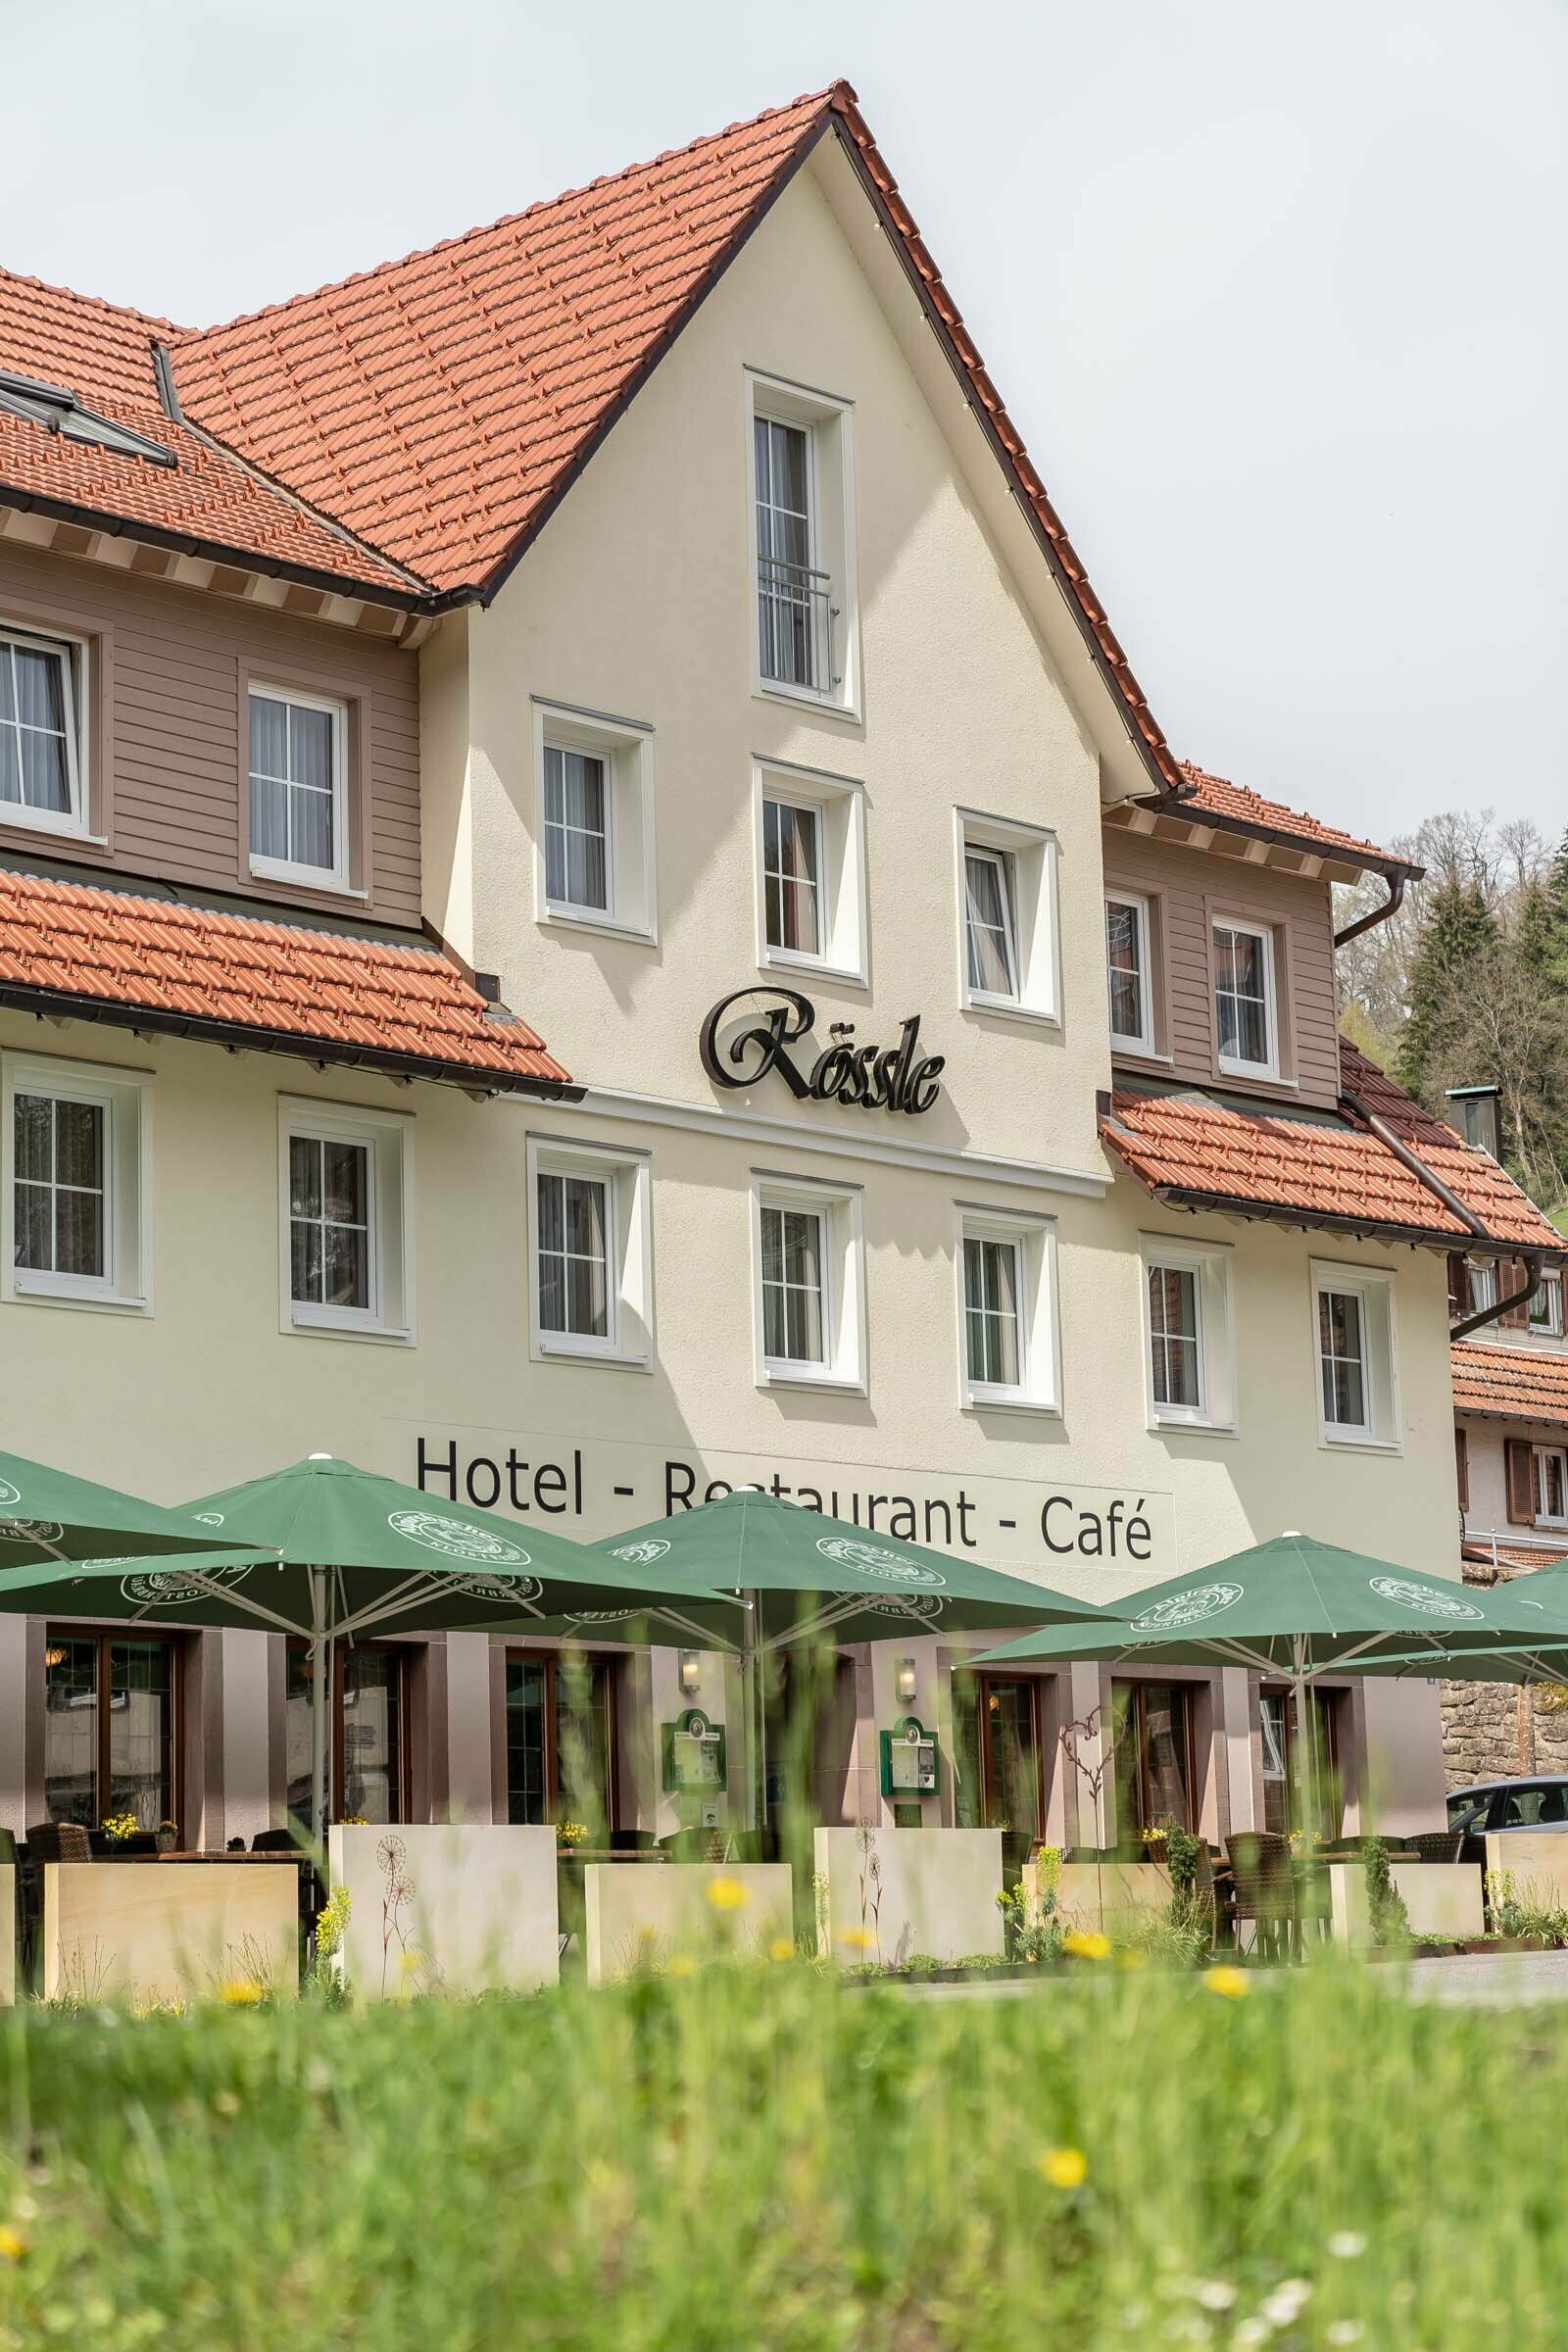 Tapetenwechsel-ab in die Natur 2 Tage/1 Nacht – Hotel Rössle Berneck  in Altensteig, Baden-Württemberg inkl. Halbpension